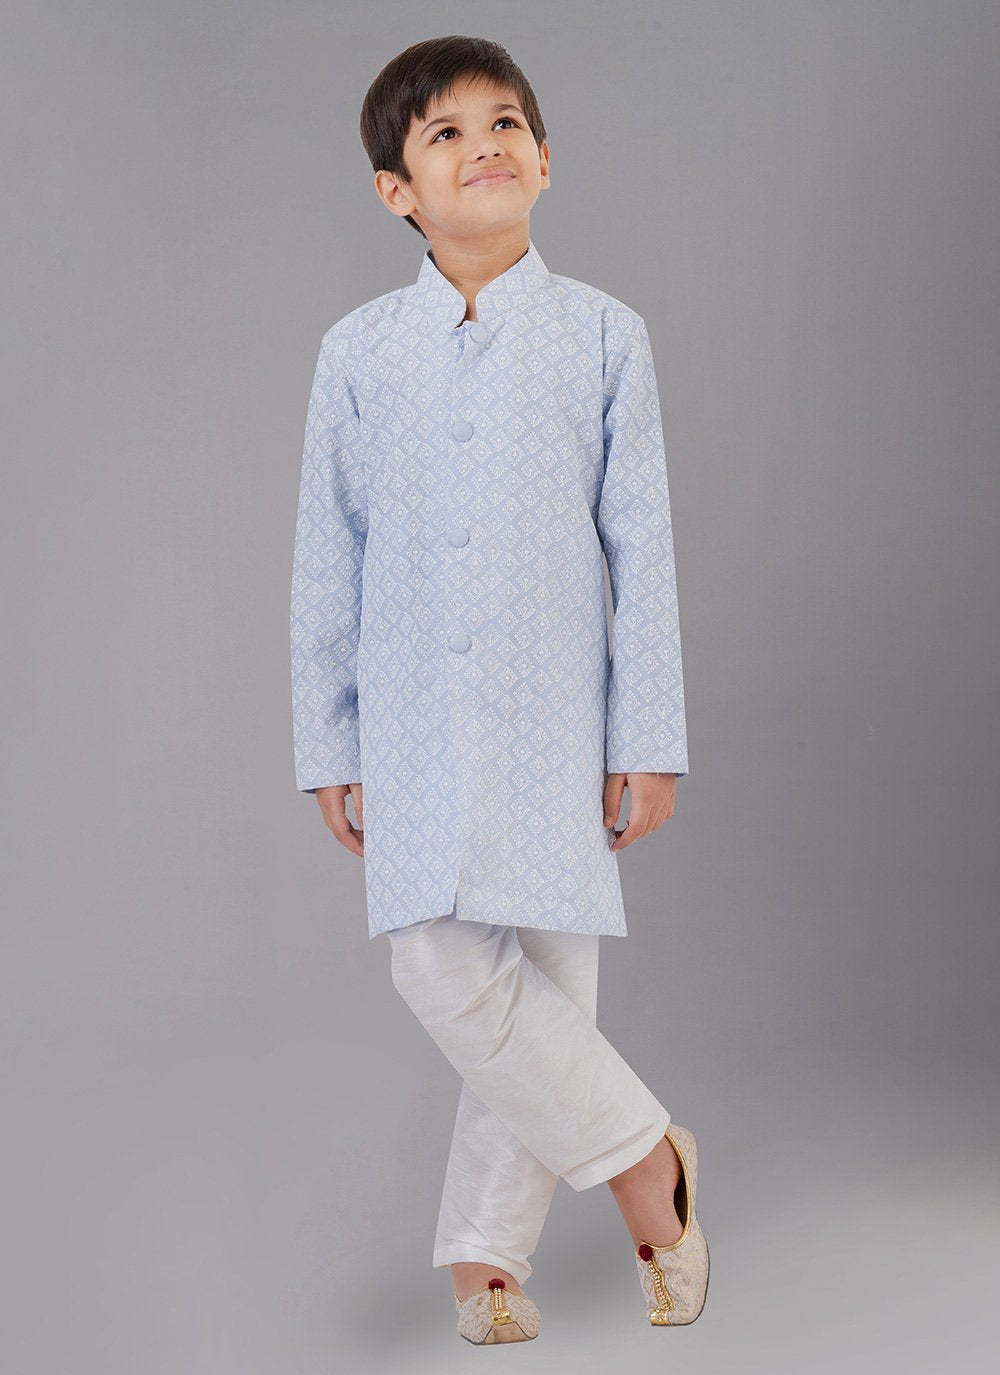 Kurta Pyjama Cotton Silk Aqua Blue Embroidered Kids